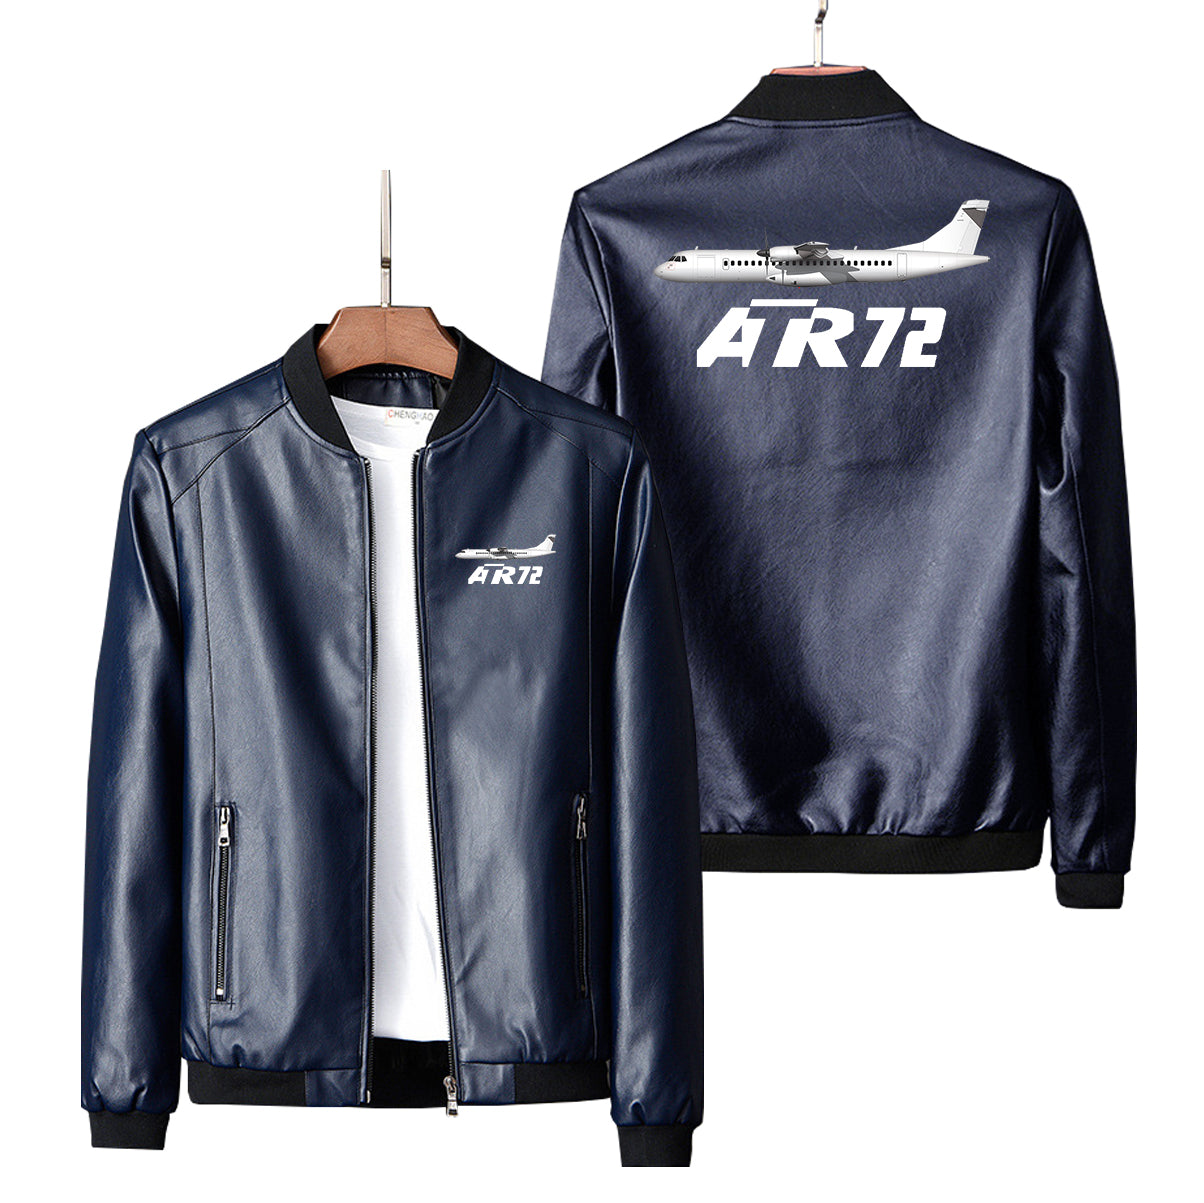 The ATR72 Designed PU Leather Jackets